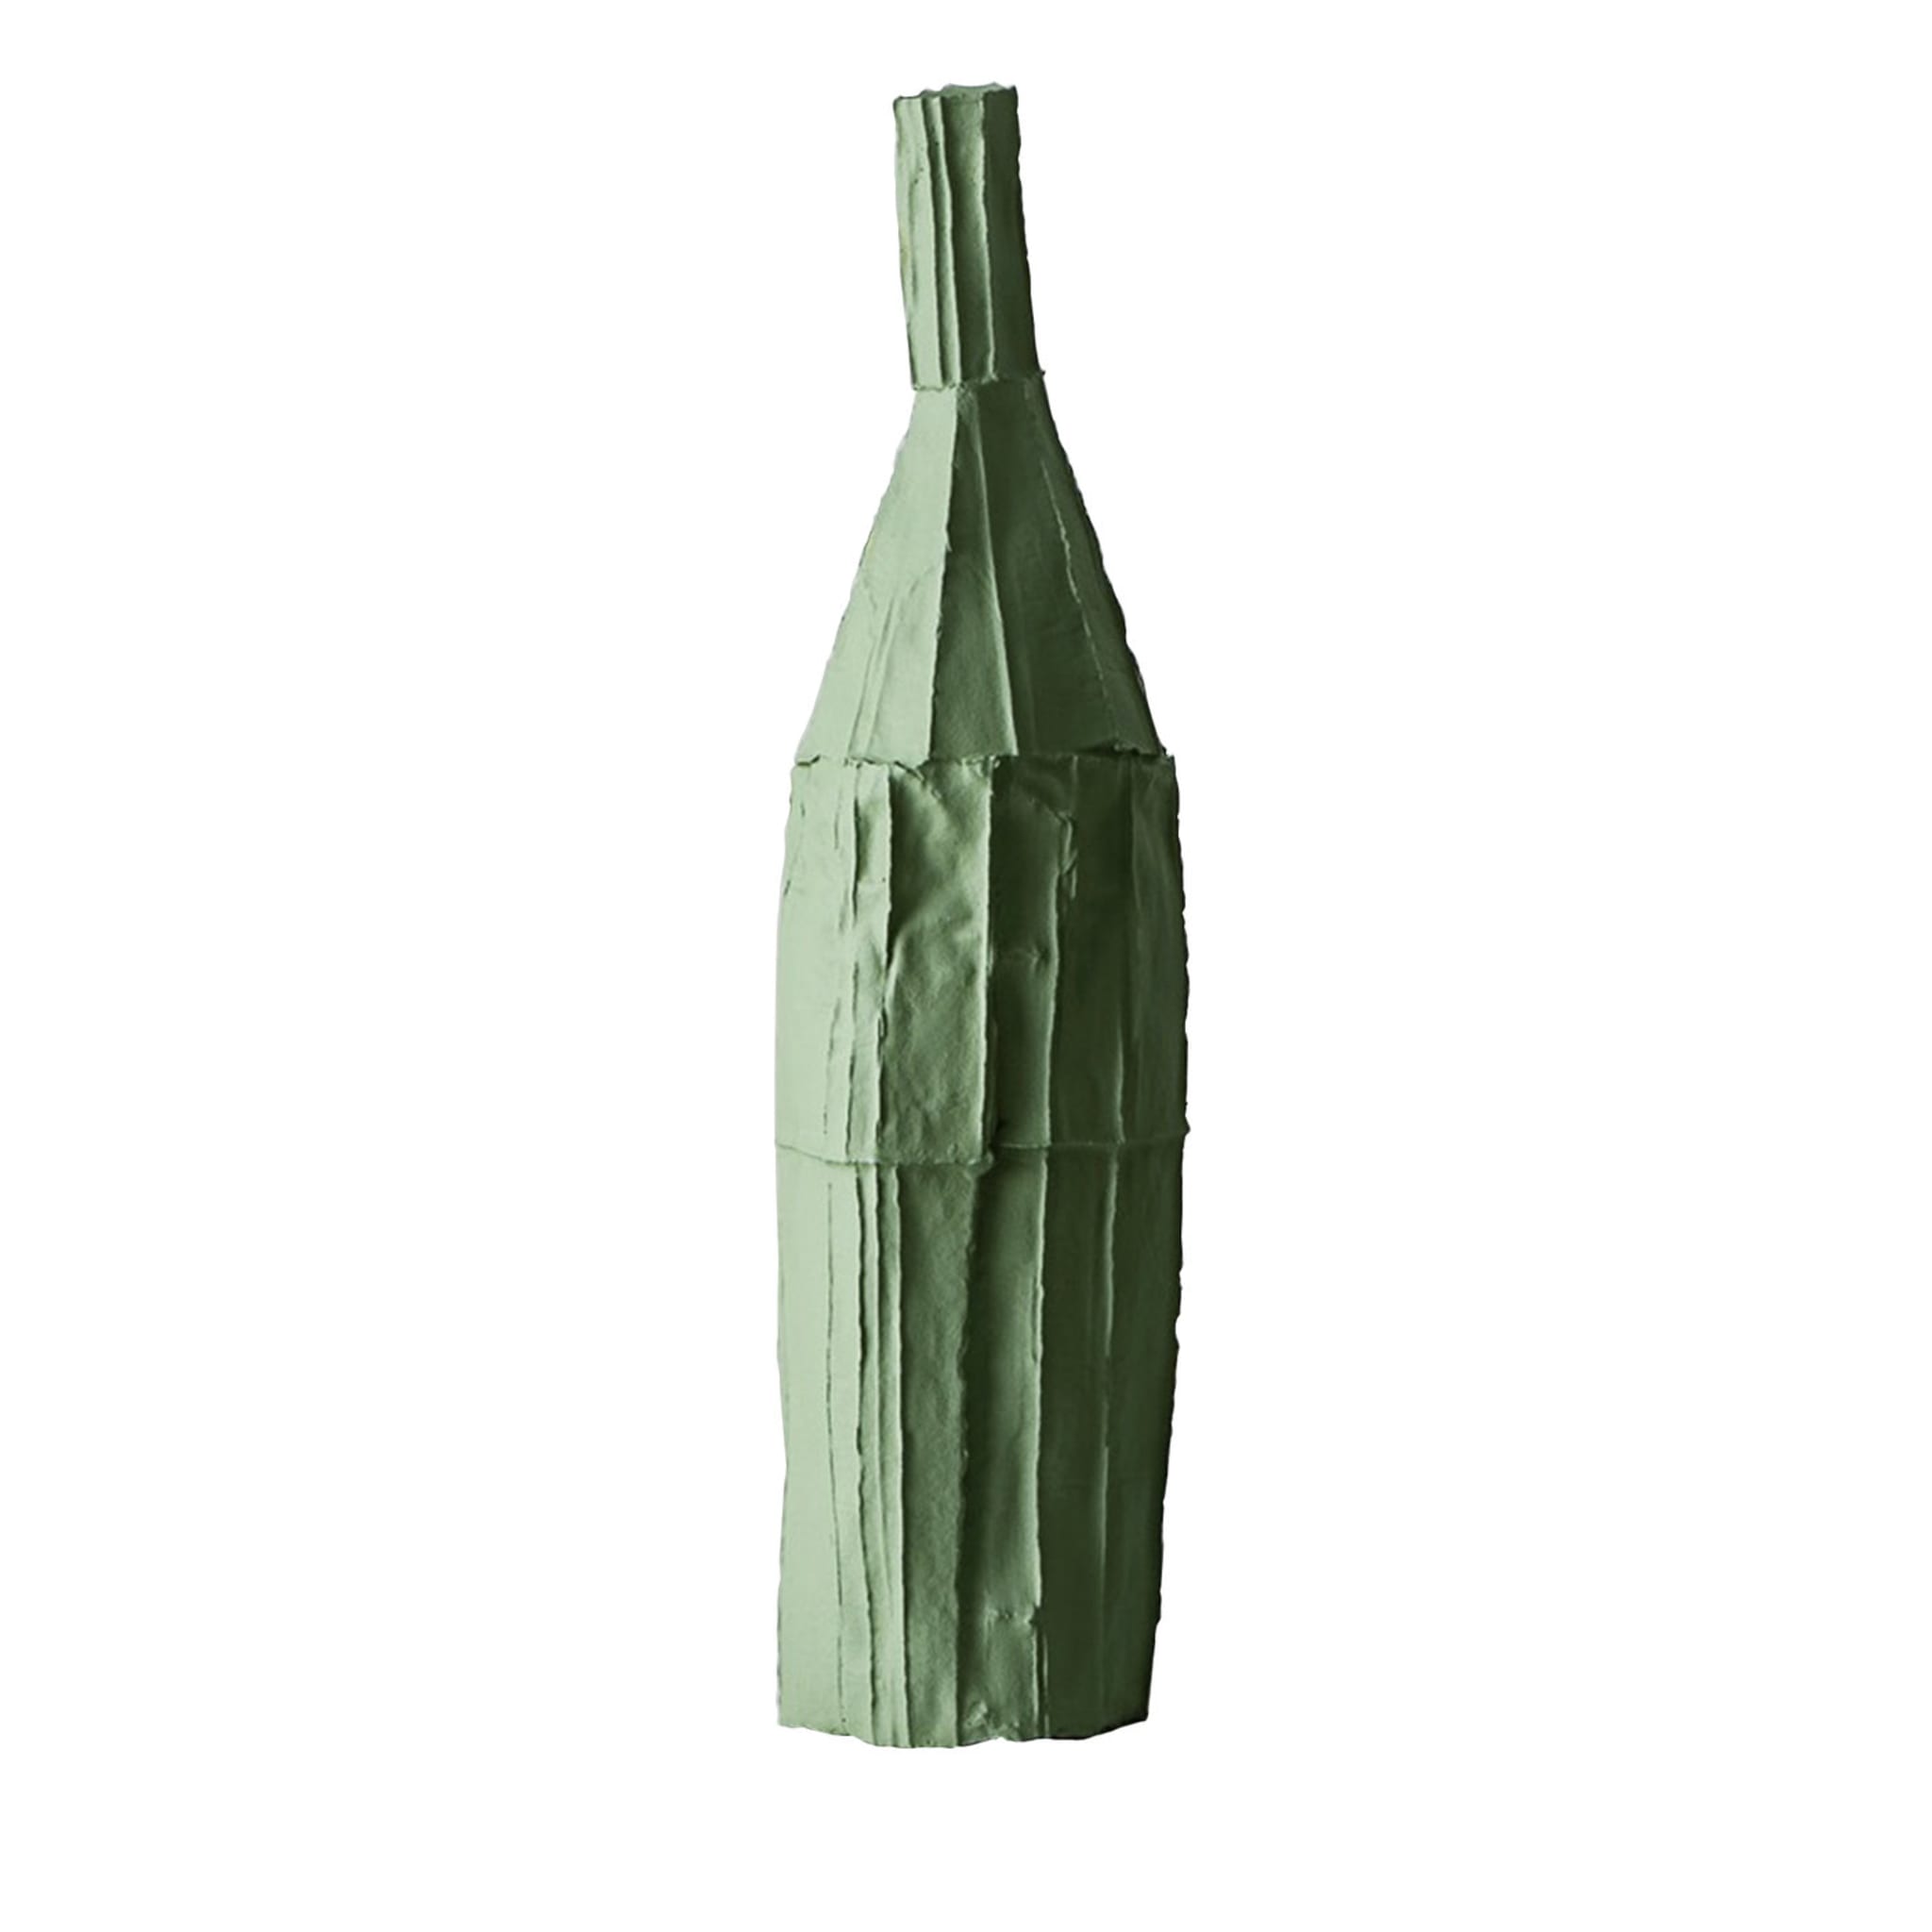 Cartocci Corteccia Green Decorative Bottle - Main view